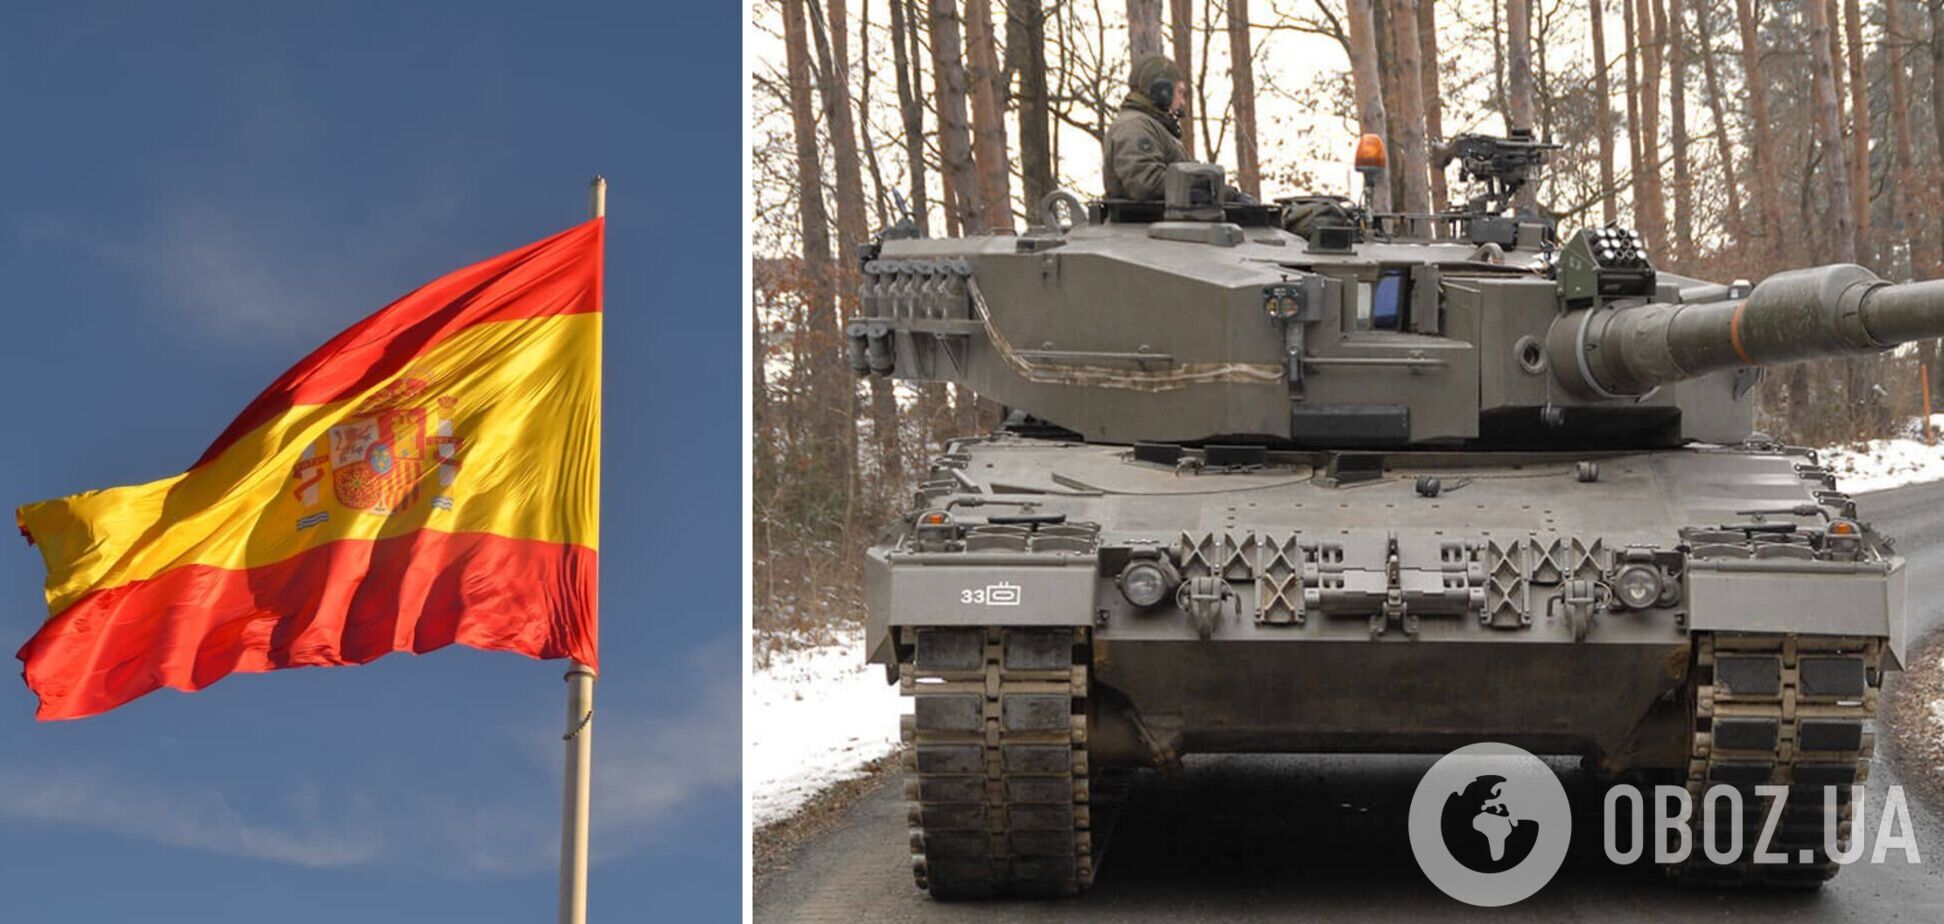 Испания отправит в Украину первые шесть танков Leopard сразу после Пасхи: СМИ узнали подробности